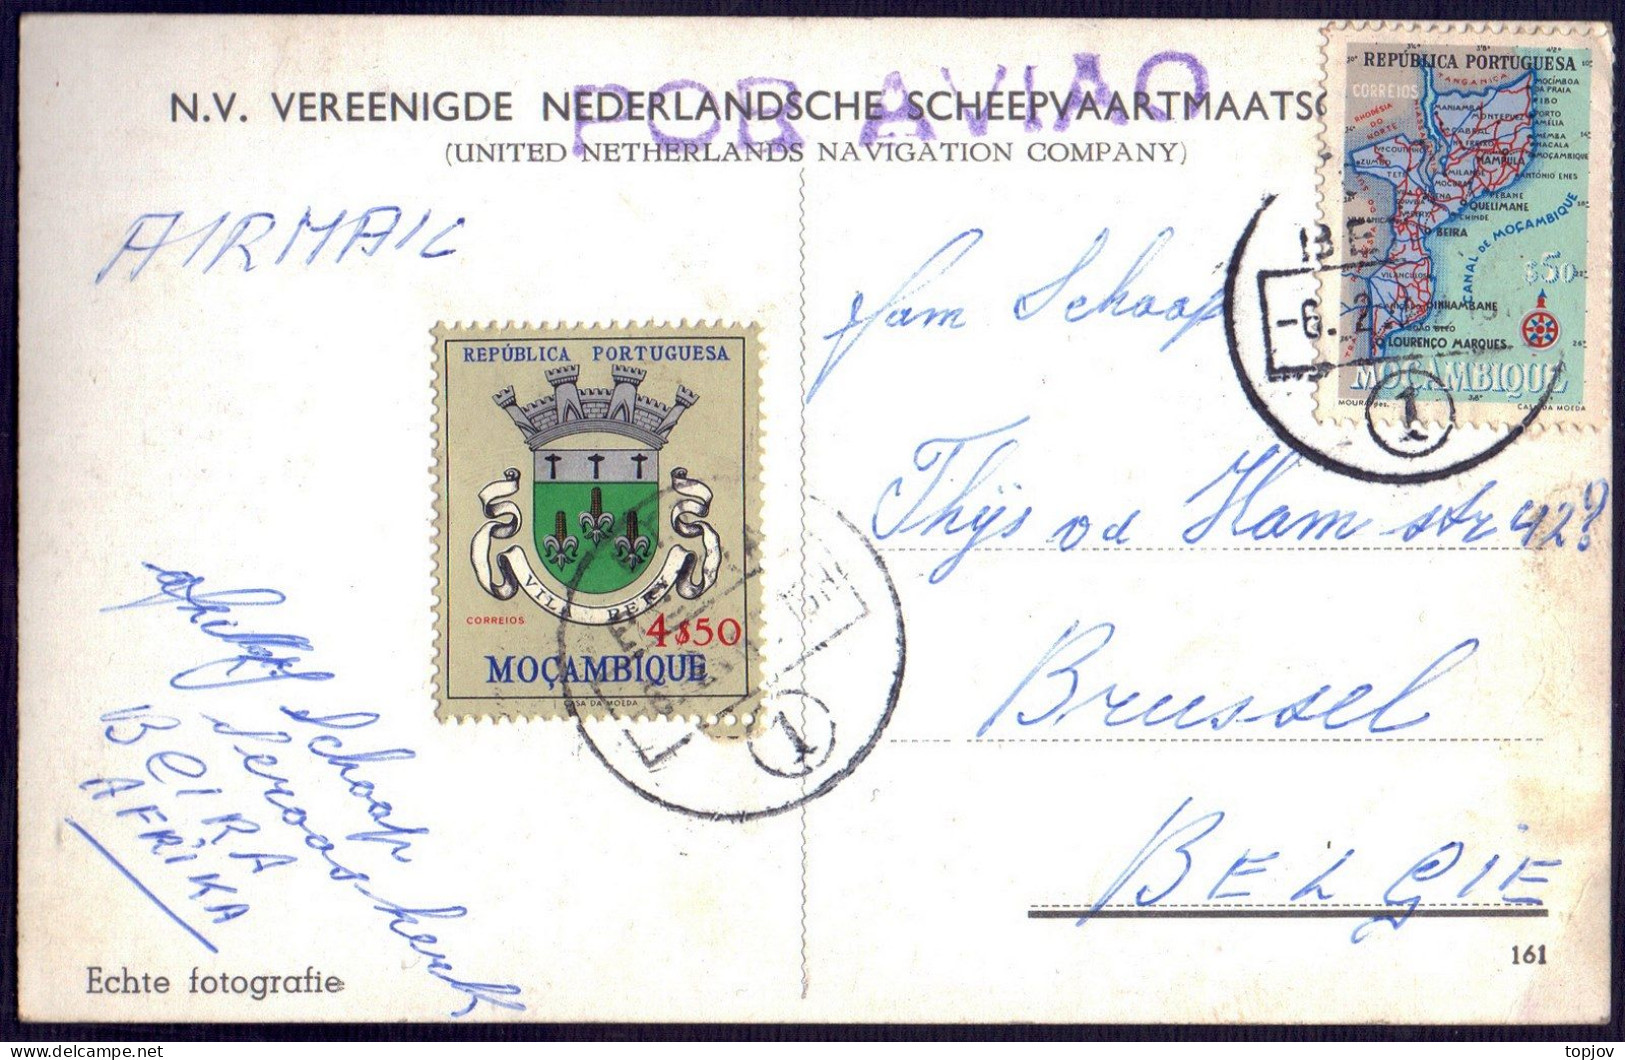 MOZAMBIQUE - SHIPS M.S. SEROOSKERK NEDERLANDSCHE - MAPS - HERALDY CORN - 1962 - Mozambique